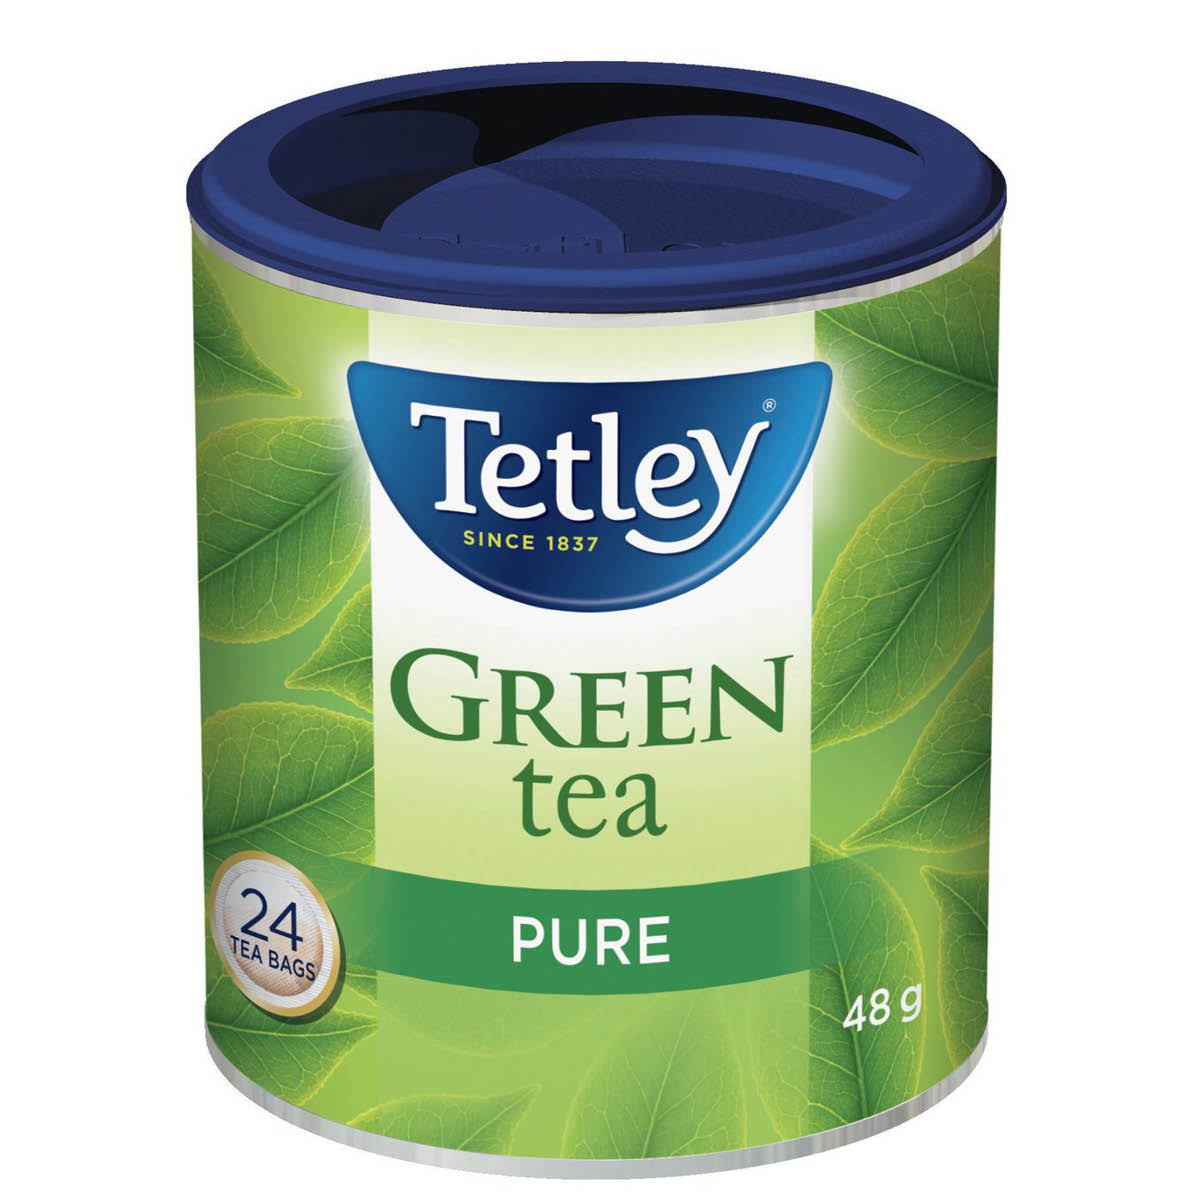 Tetley Classic Green Tea, 24 bags